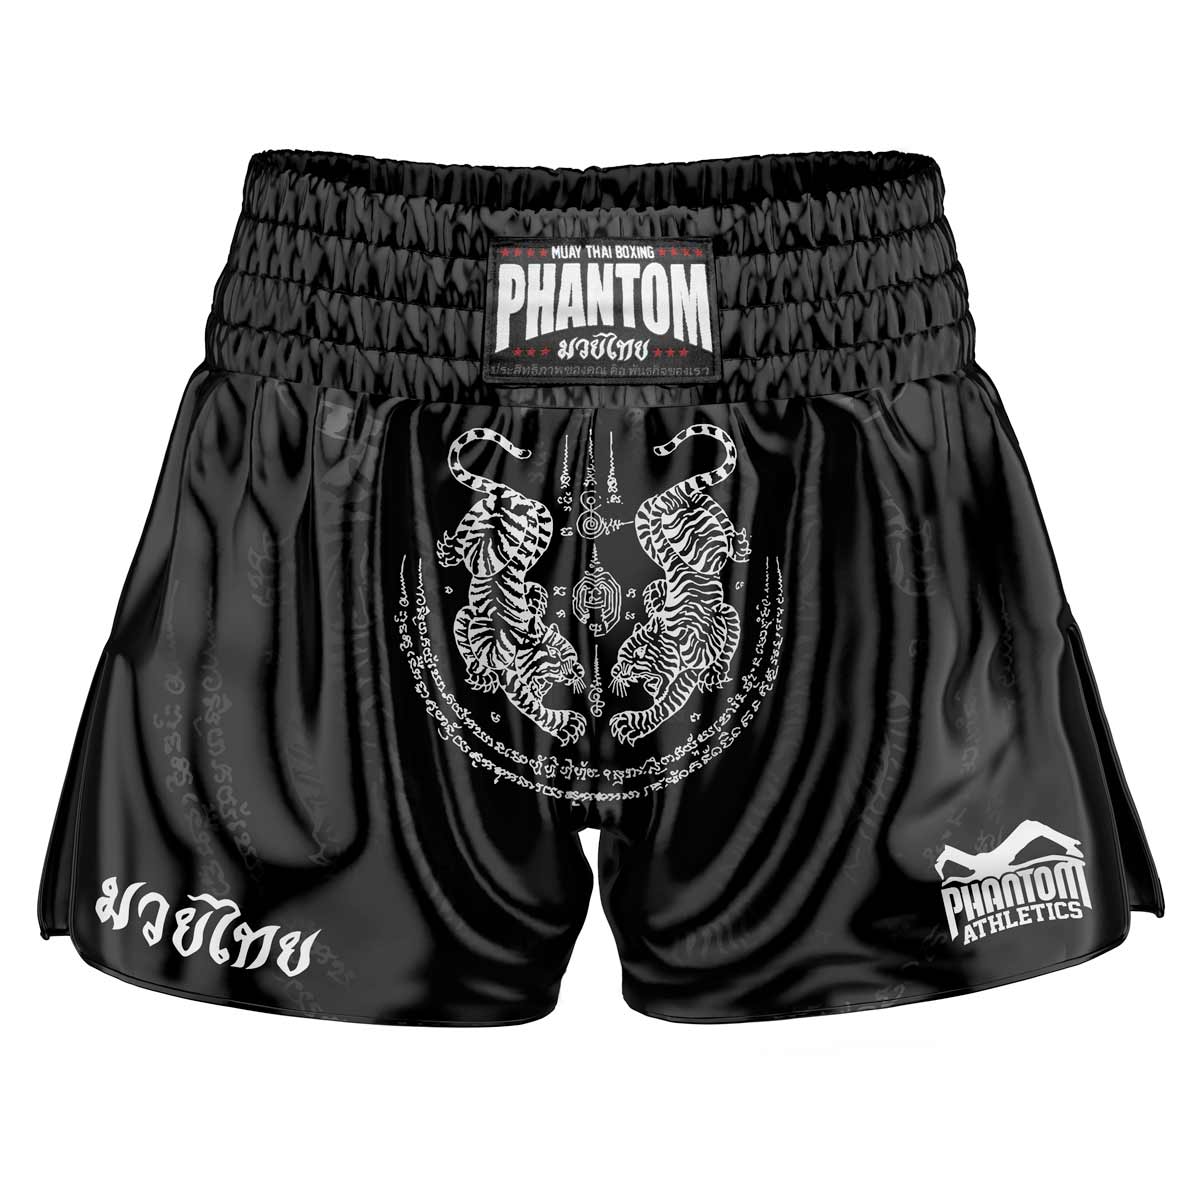 Los pantalones cortos Phantom Muay Thai SAK YANT en negro. La tela satinada de la vieja escuela con un diseño tradicional de tigre te da una sensación original de Tailandia. Con la calidad habitual Phantom Athletics . Ideal para tu entrenamiento y competición de boxeo tailandés.